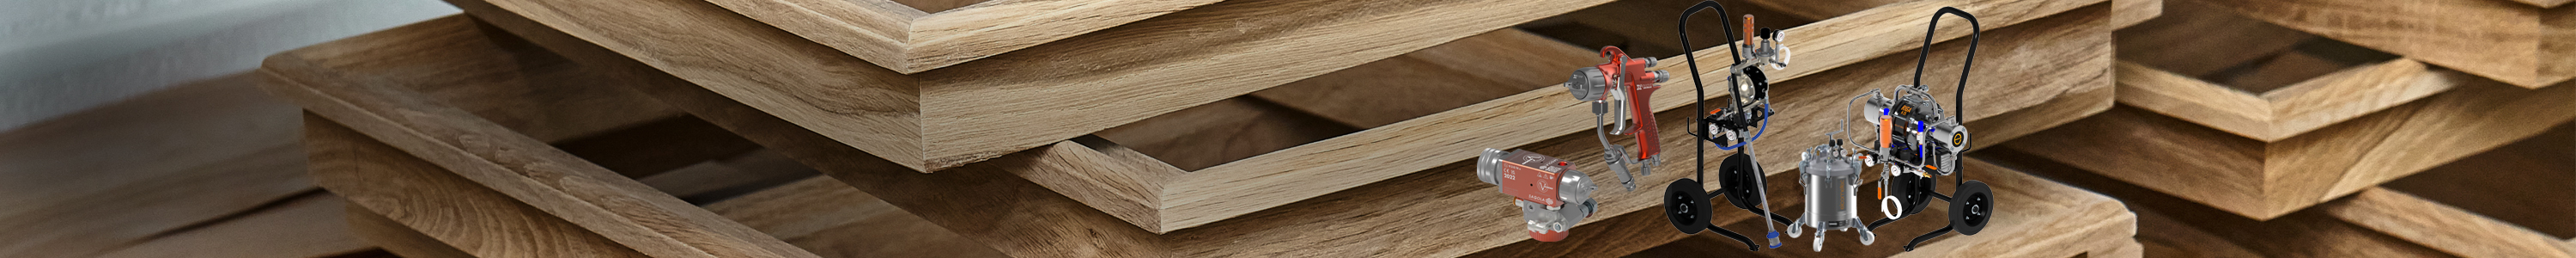 Einsetzbar für die Bearbeitung von Holz, hochwertigen Oberflächen, leichten Industrieveredelungen und automatisierten Lackieranlagen.